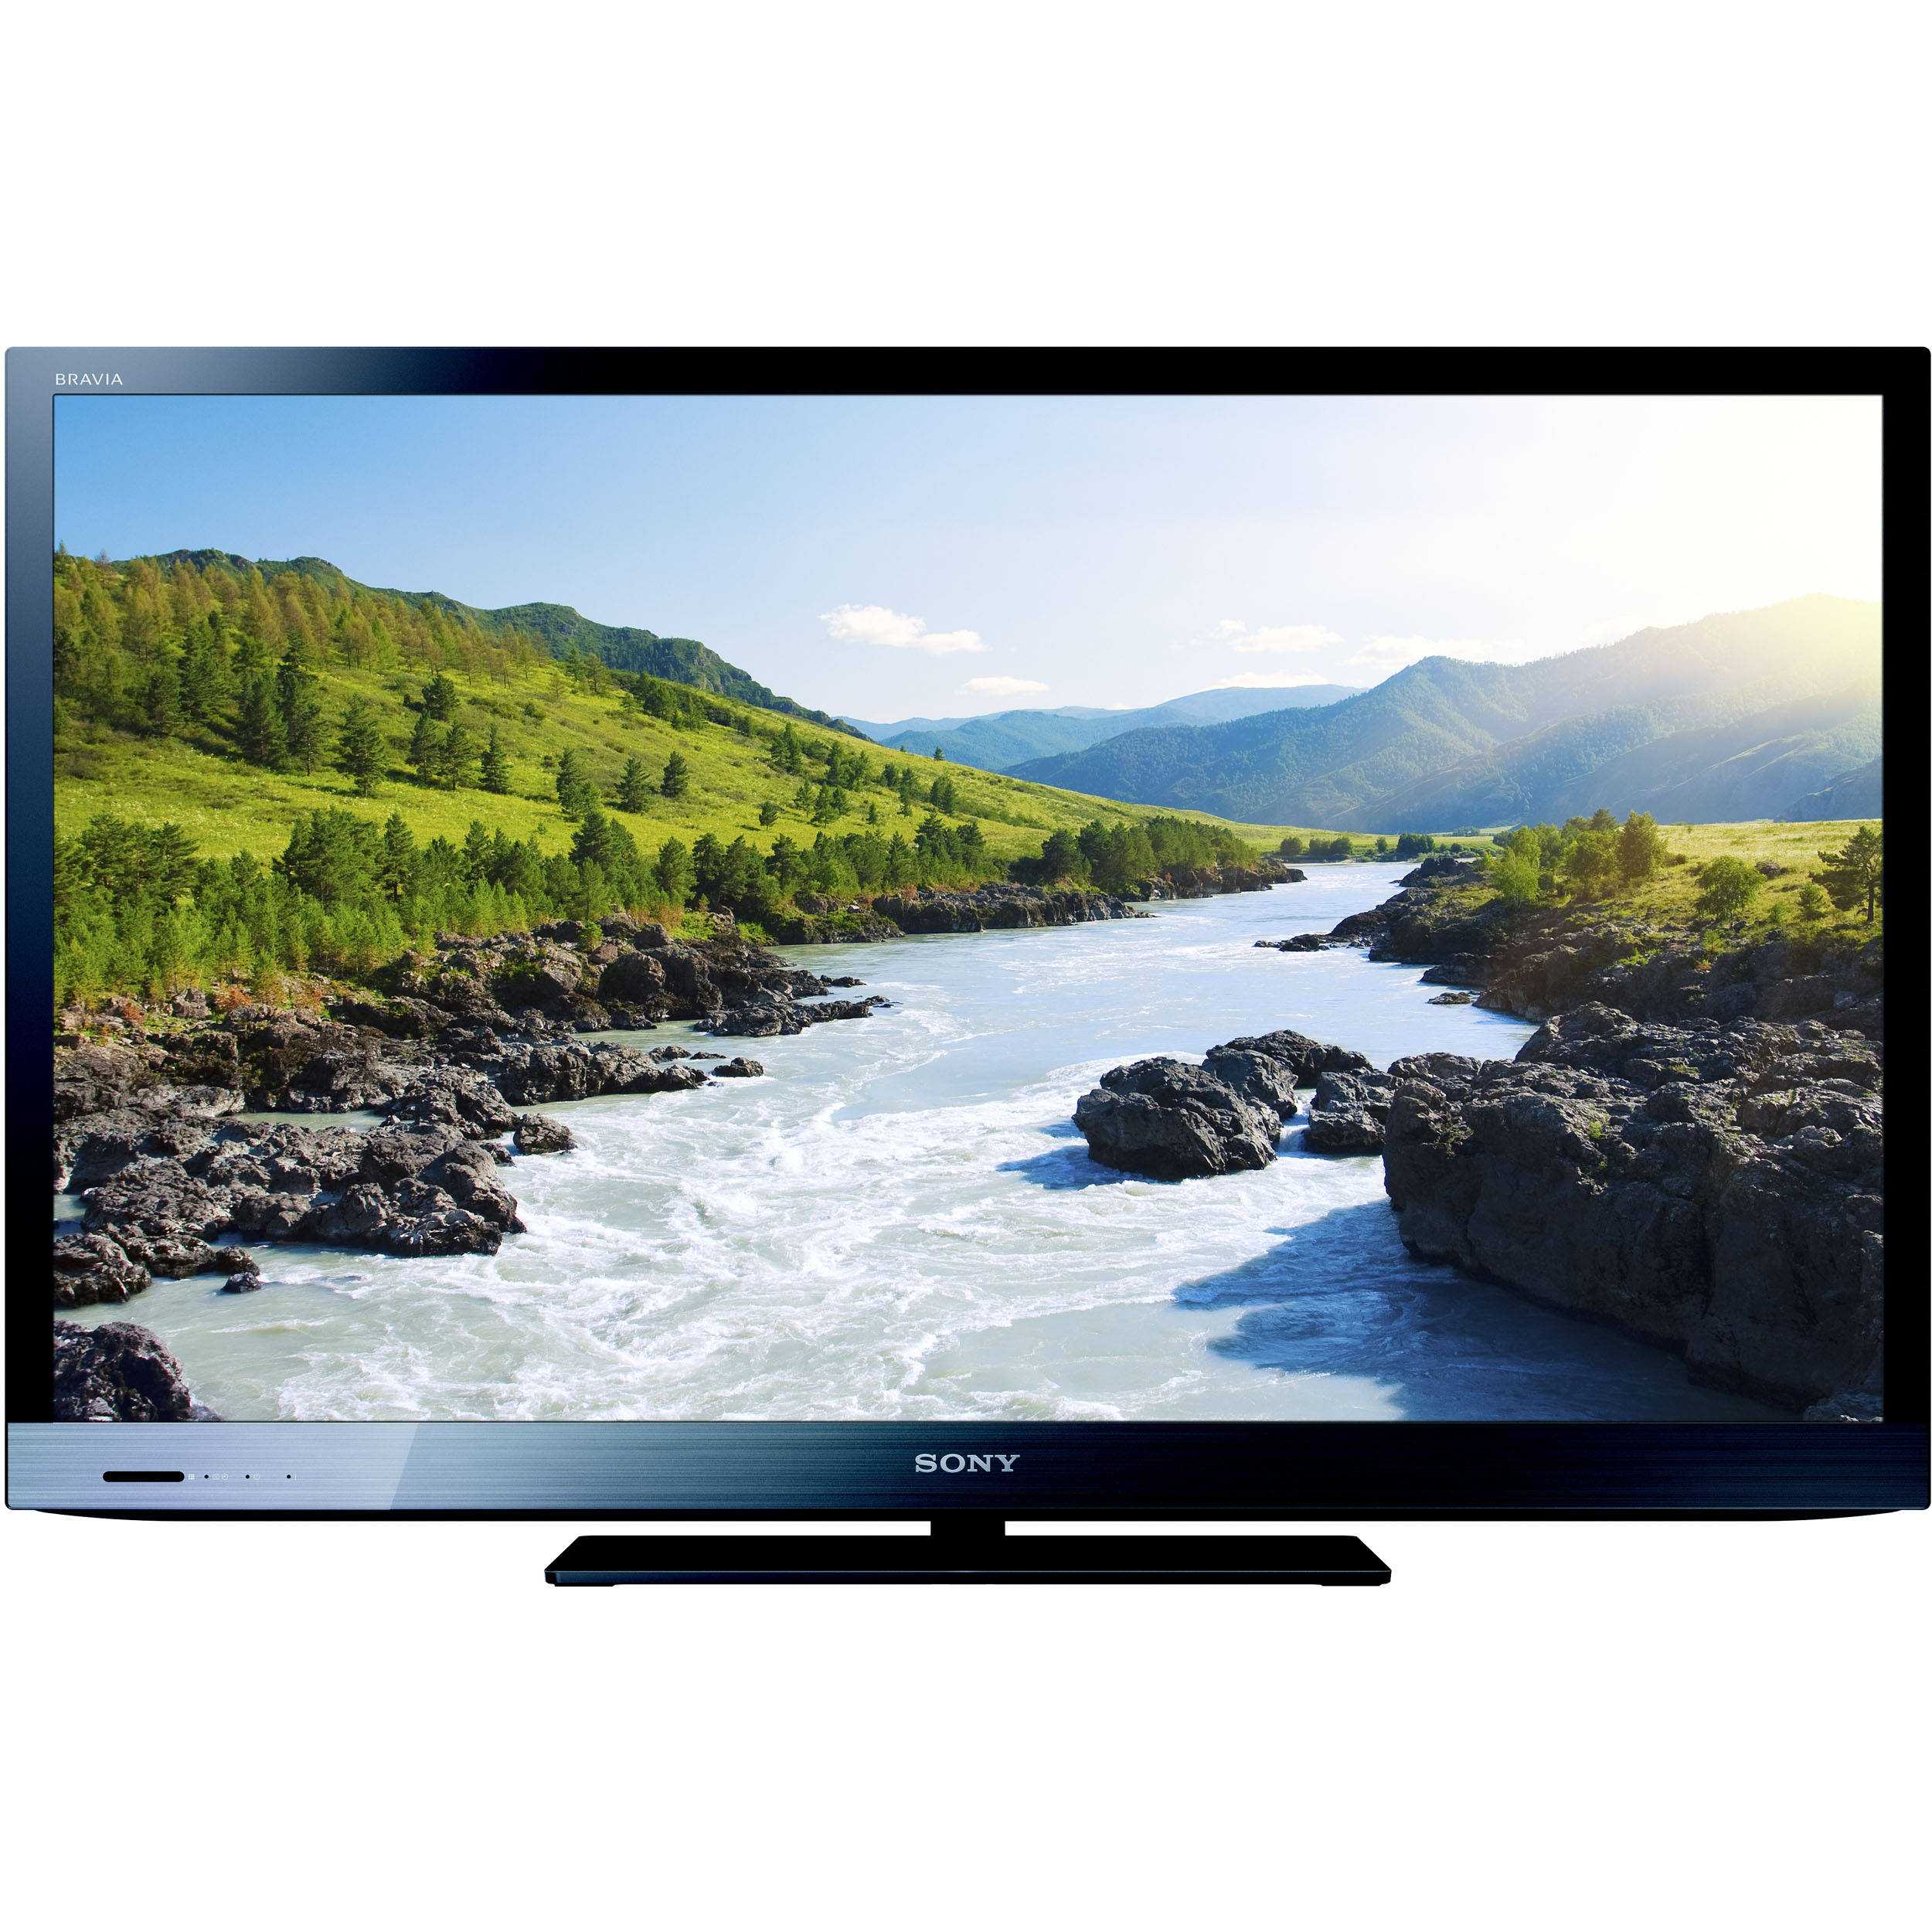 Телевизор Sony KDL-26BX320 - подробные характеристики обзоры видео фото Цены в интернет-магазинах где можно купить телевизор Sony KDL-26BX320